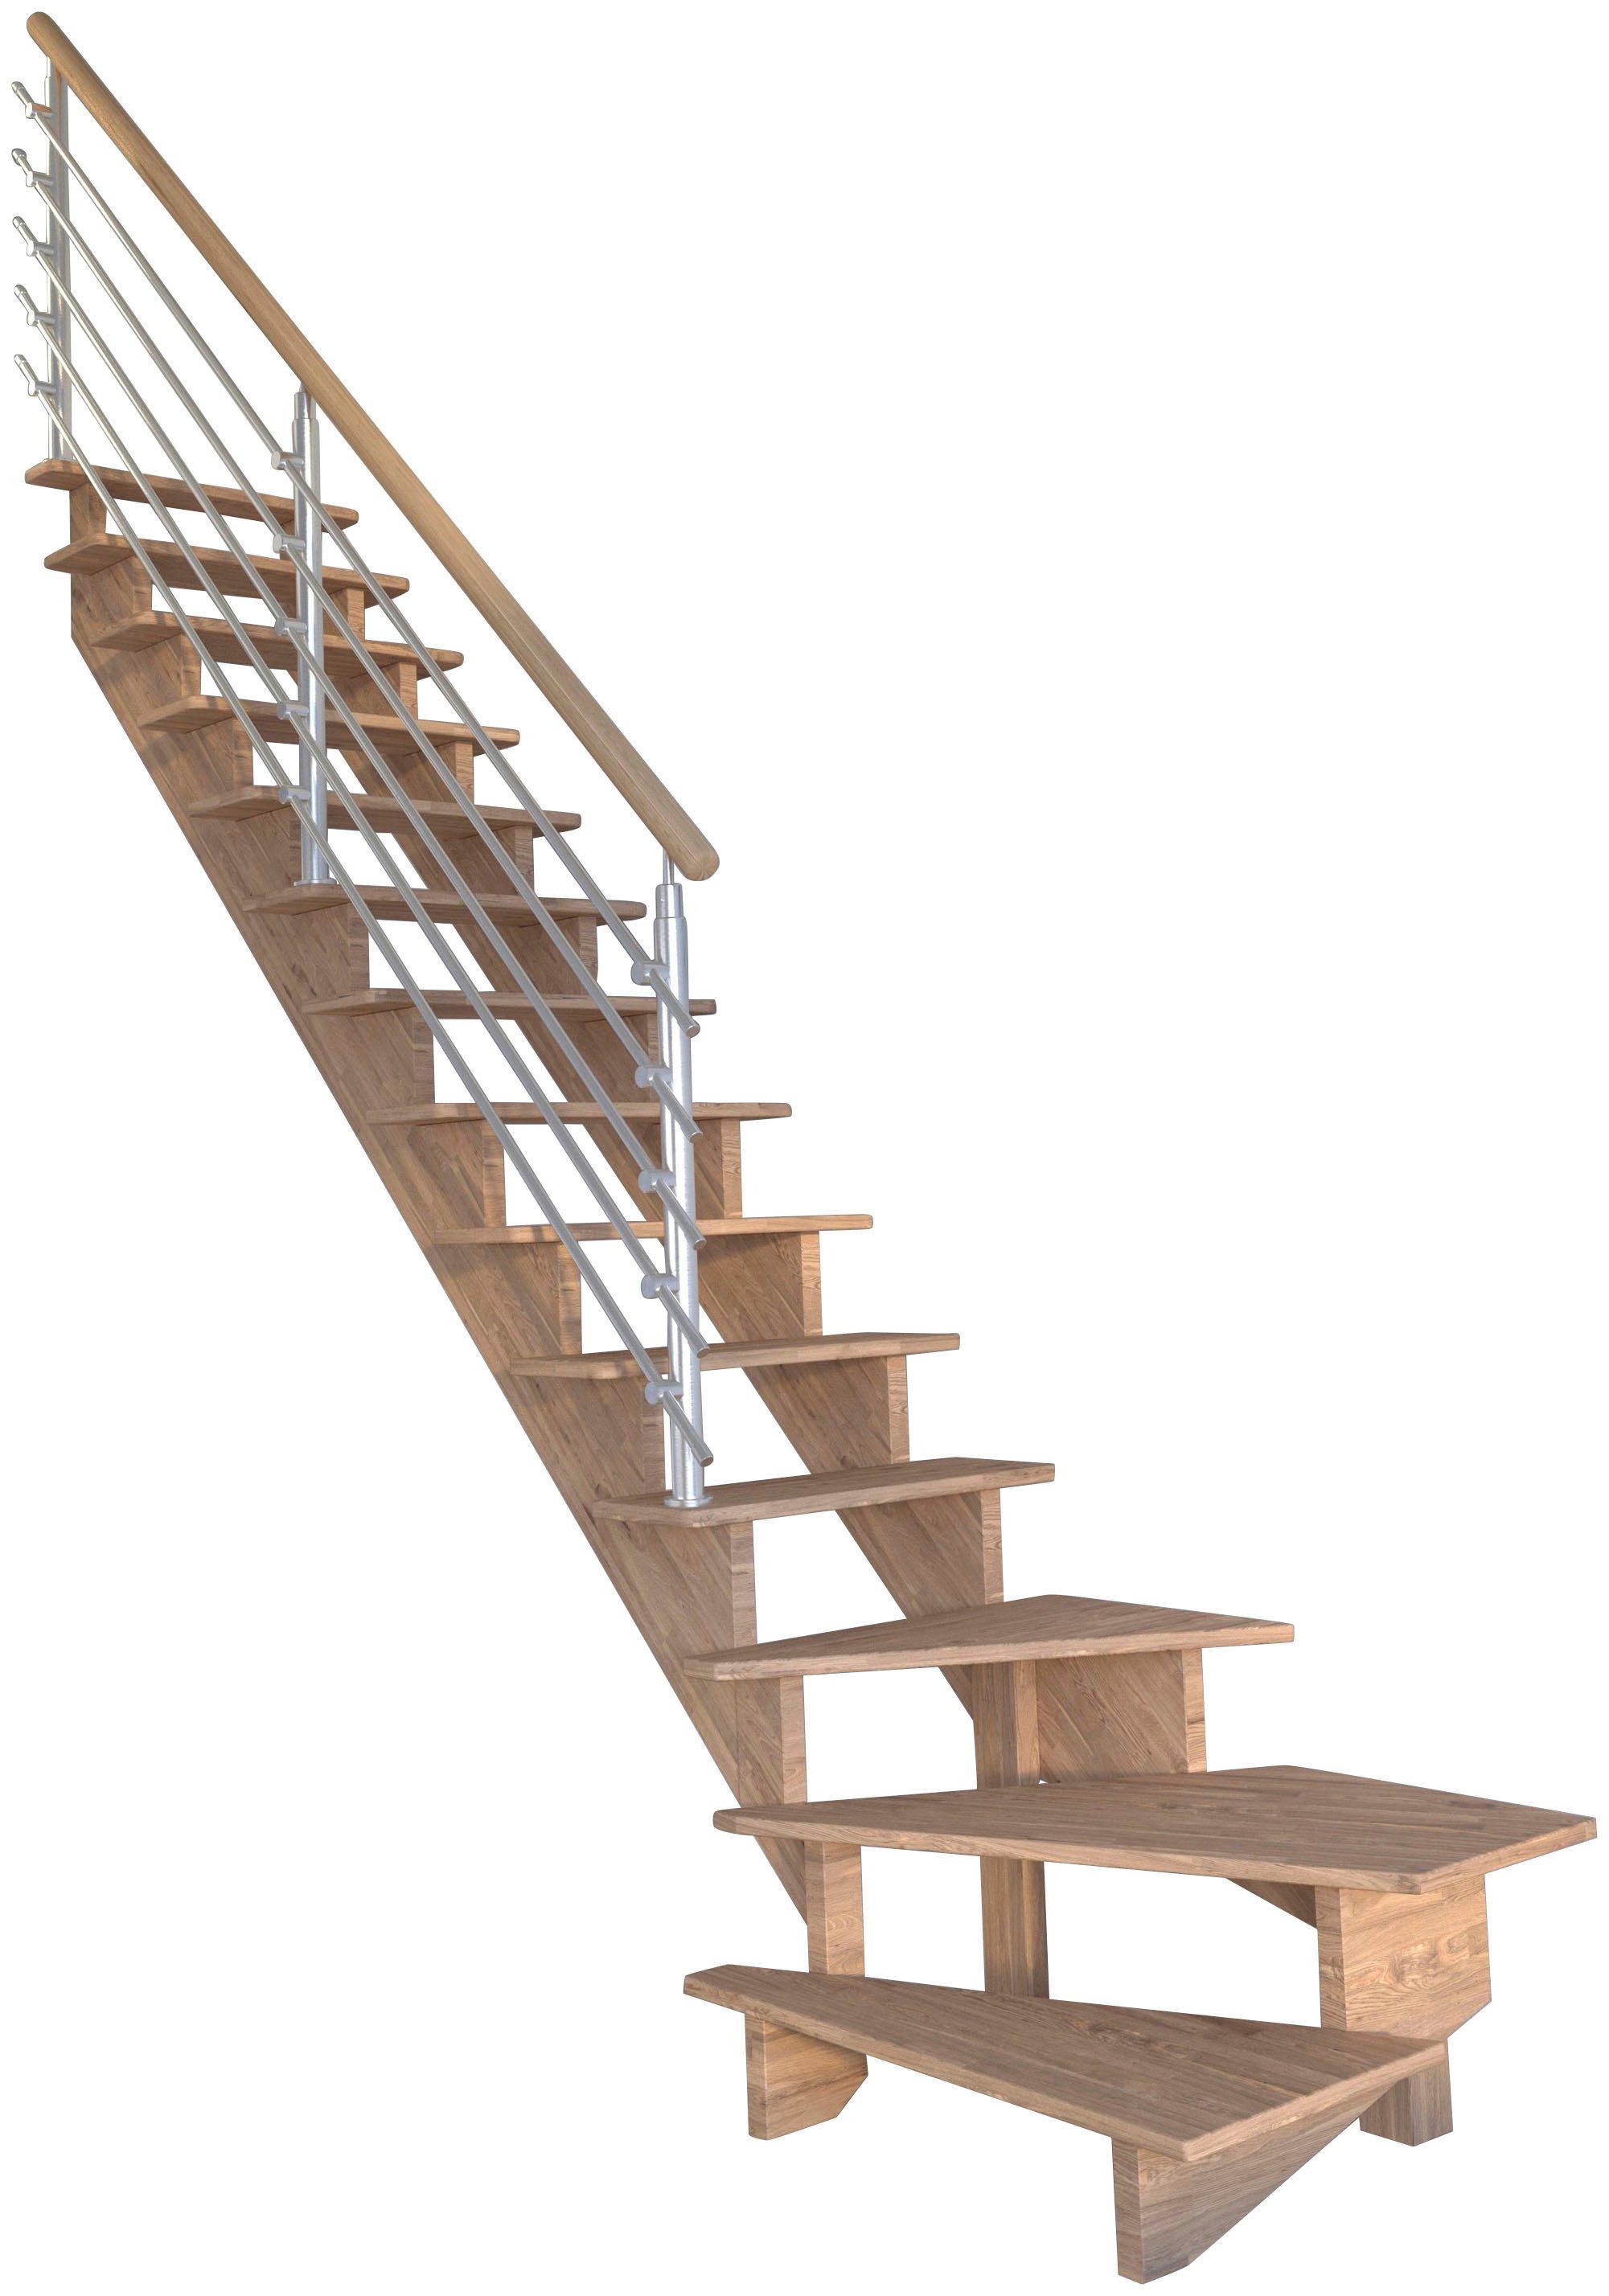 Starwood Systemtreppe Massivholz Lindos, Design-Geländer Edelstahl, für Geschosshöhen bis 300 cm, Stufen offen, gewendelt Links, Durchgehende Wangenteile | Treppen